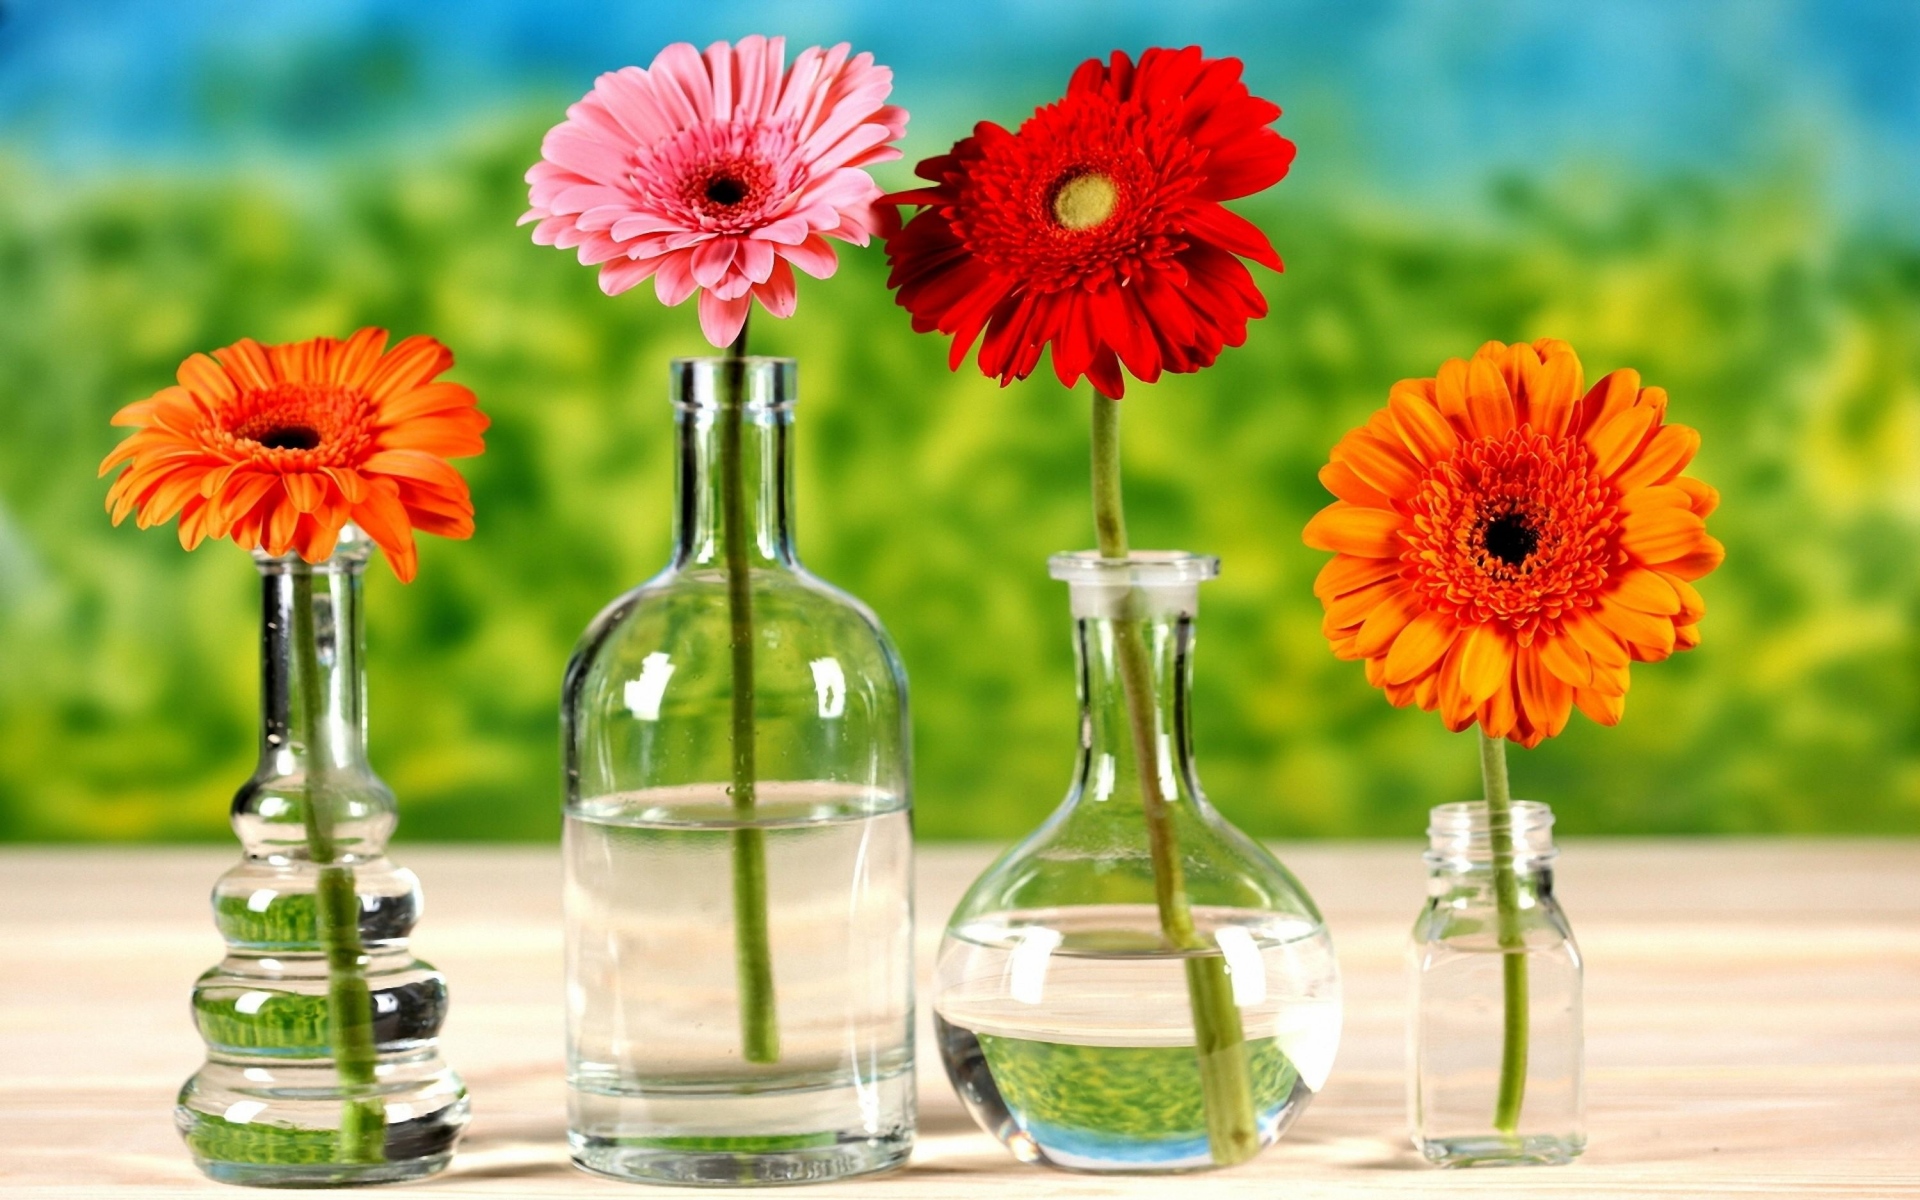 Картинки Гербера, цветы, яркие, вазы, вода, линия, зеленый фото и обои на рабочий стол